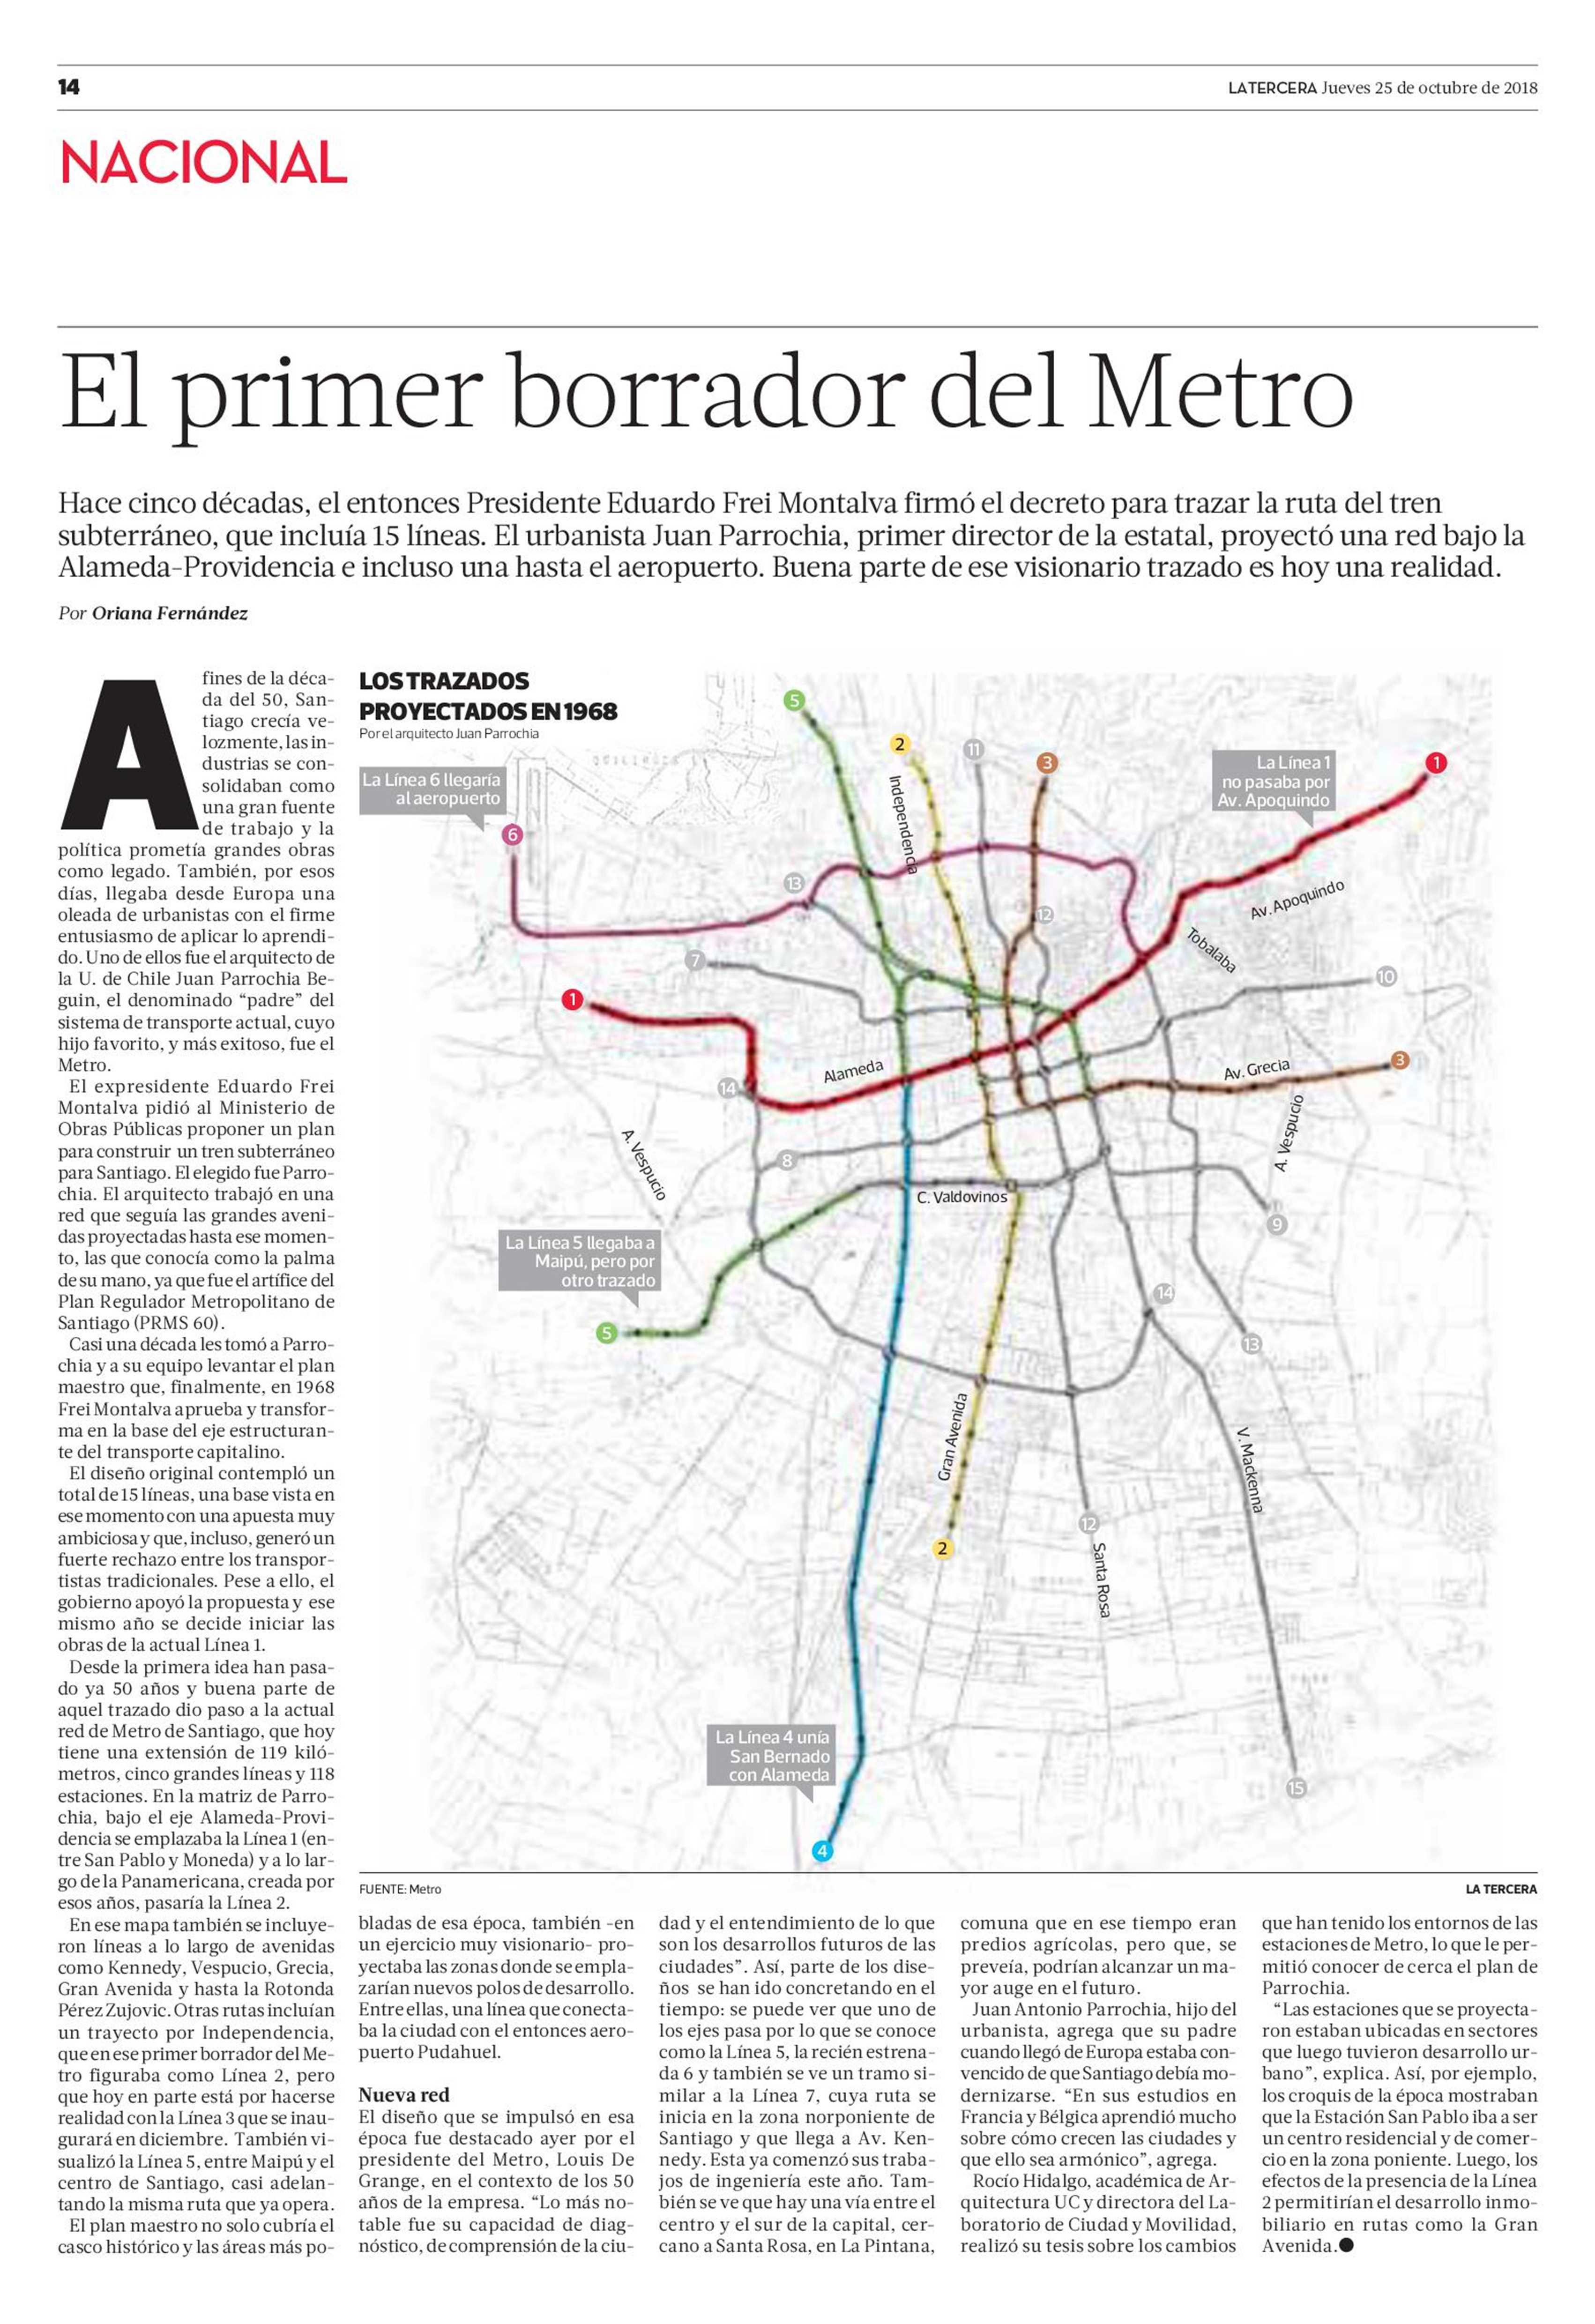 18-10-25_El_primer_borrador_del_MetroRocio_Hidalgo_en_La_Tercera.JPG